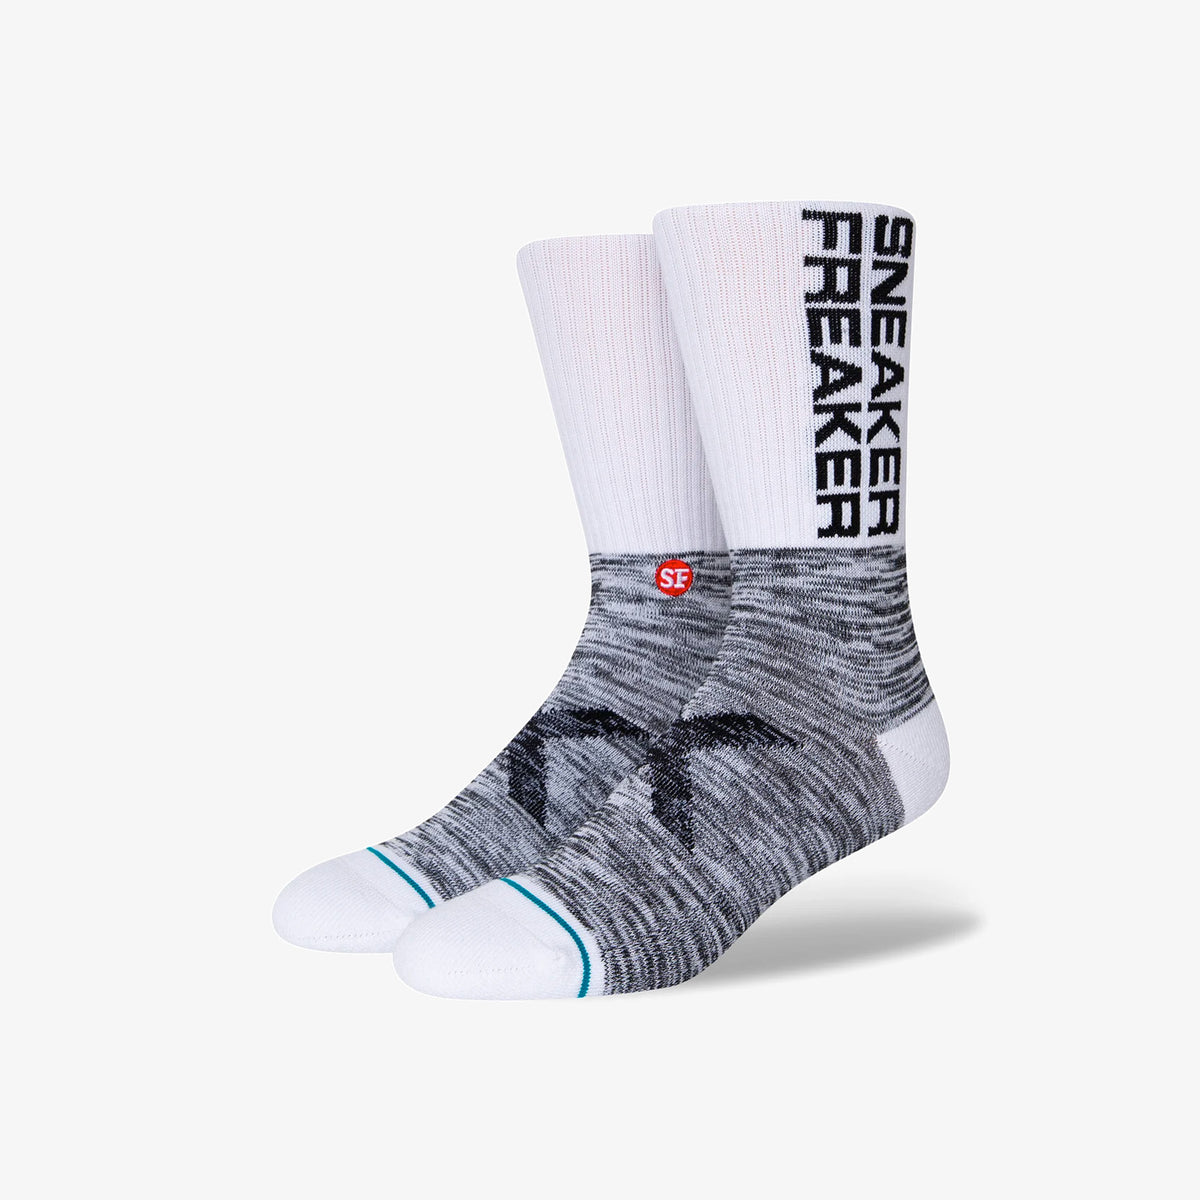 Sneaker Freaker Crew Socks - White